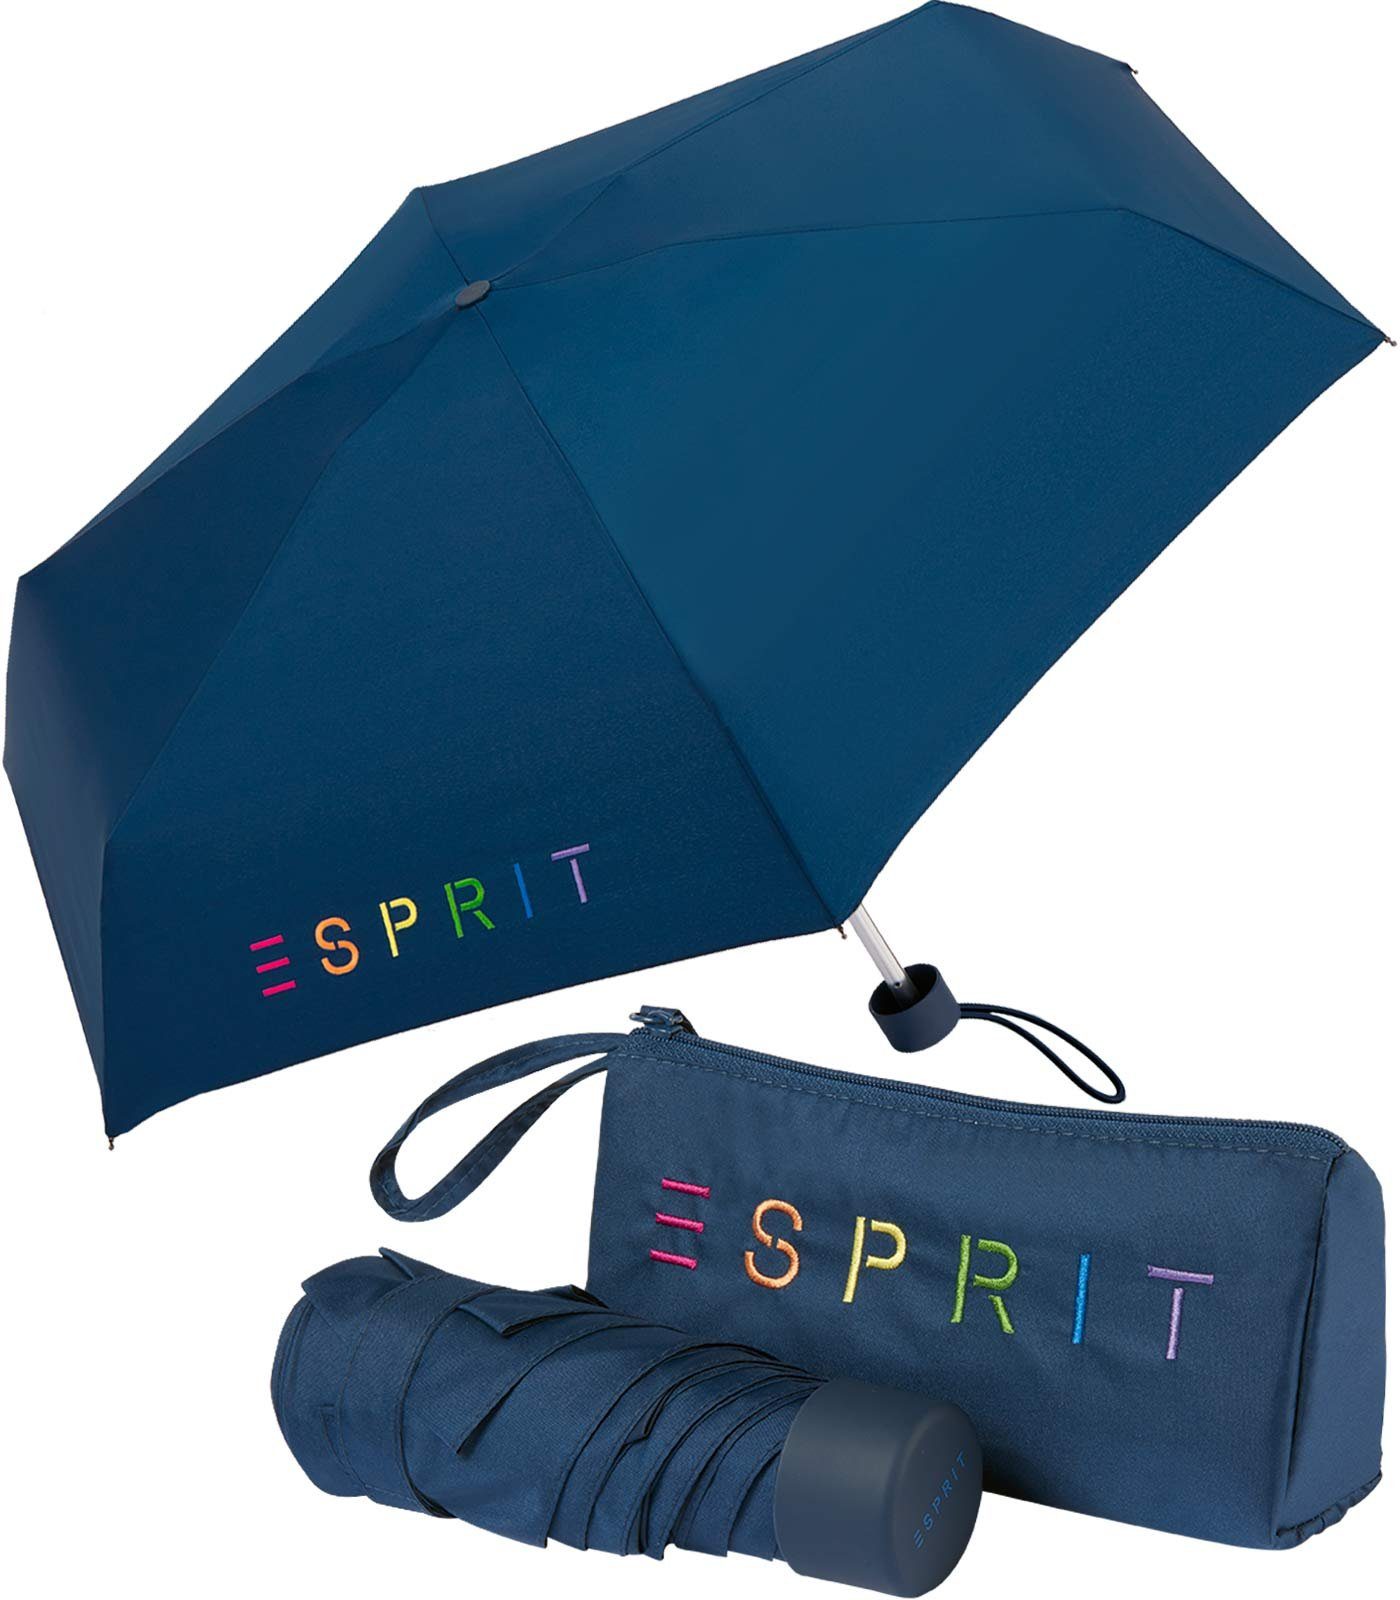 Esprit Taschenregenschirm Damen-Regenschirm Colorful Logo, bunt bedruckt mit Esprit-Schriftzug blau